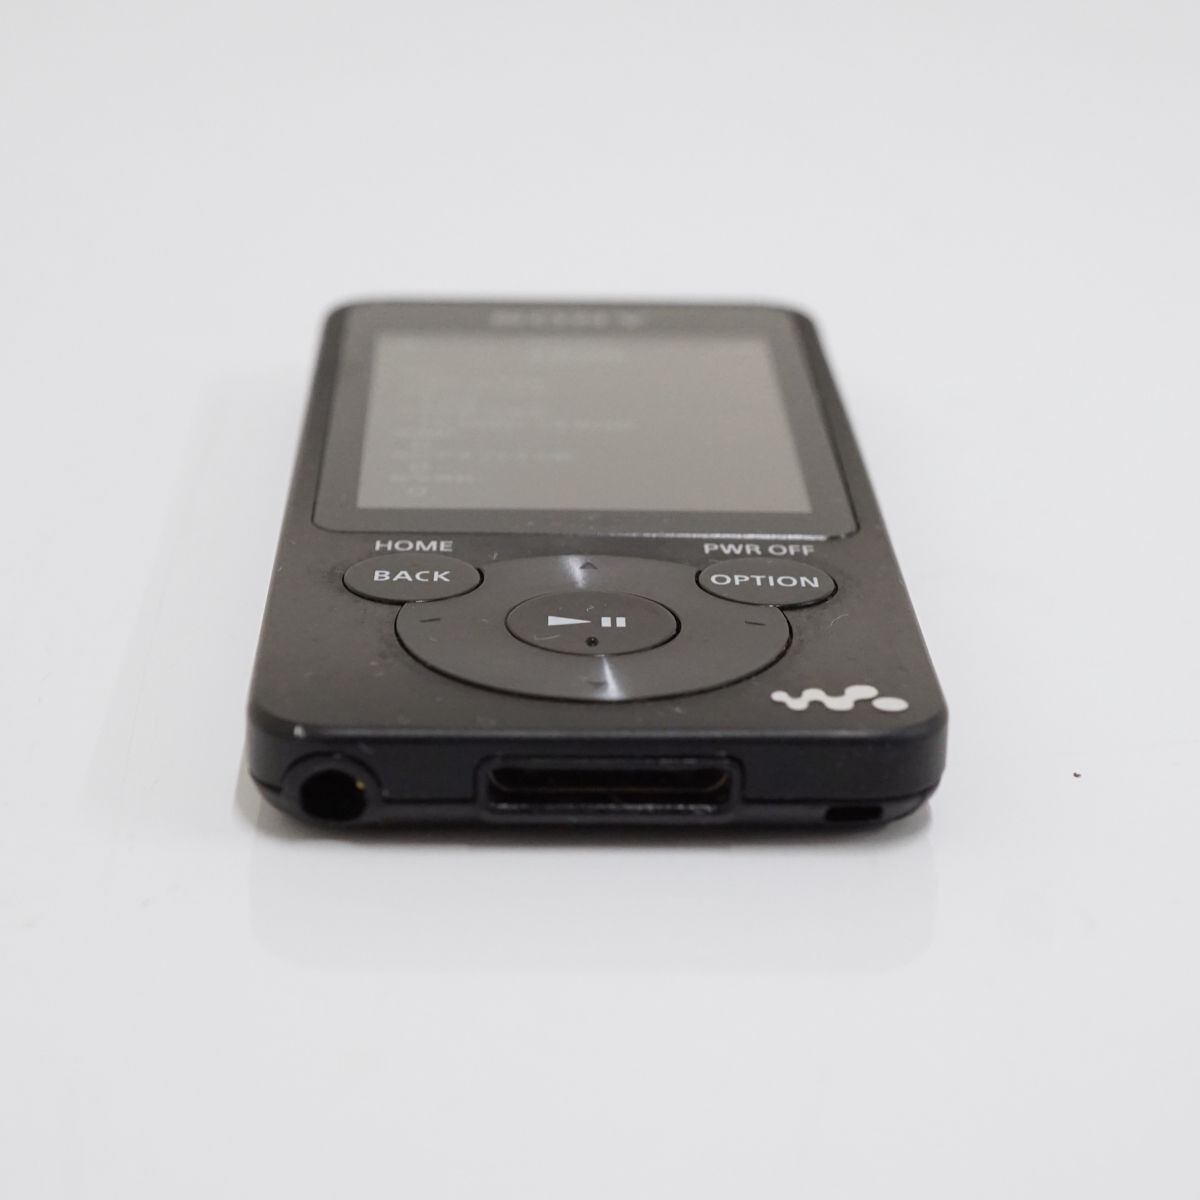 SONY ウォークマン NW-S785 16GB USED美品 本体のみ ブラック デジタルメディアプレーヤー Bluetooh対応 完動品 T V9112